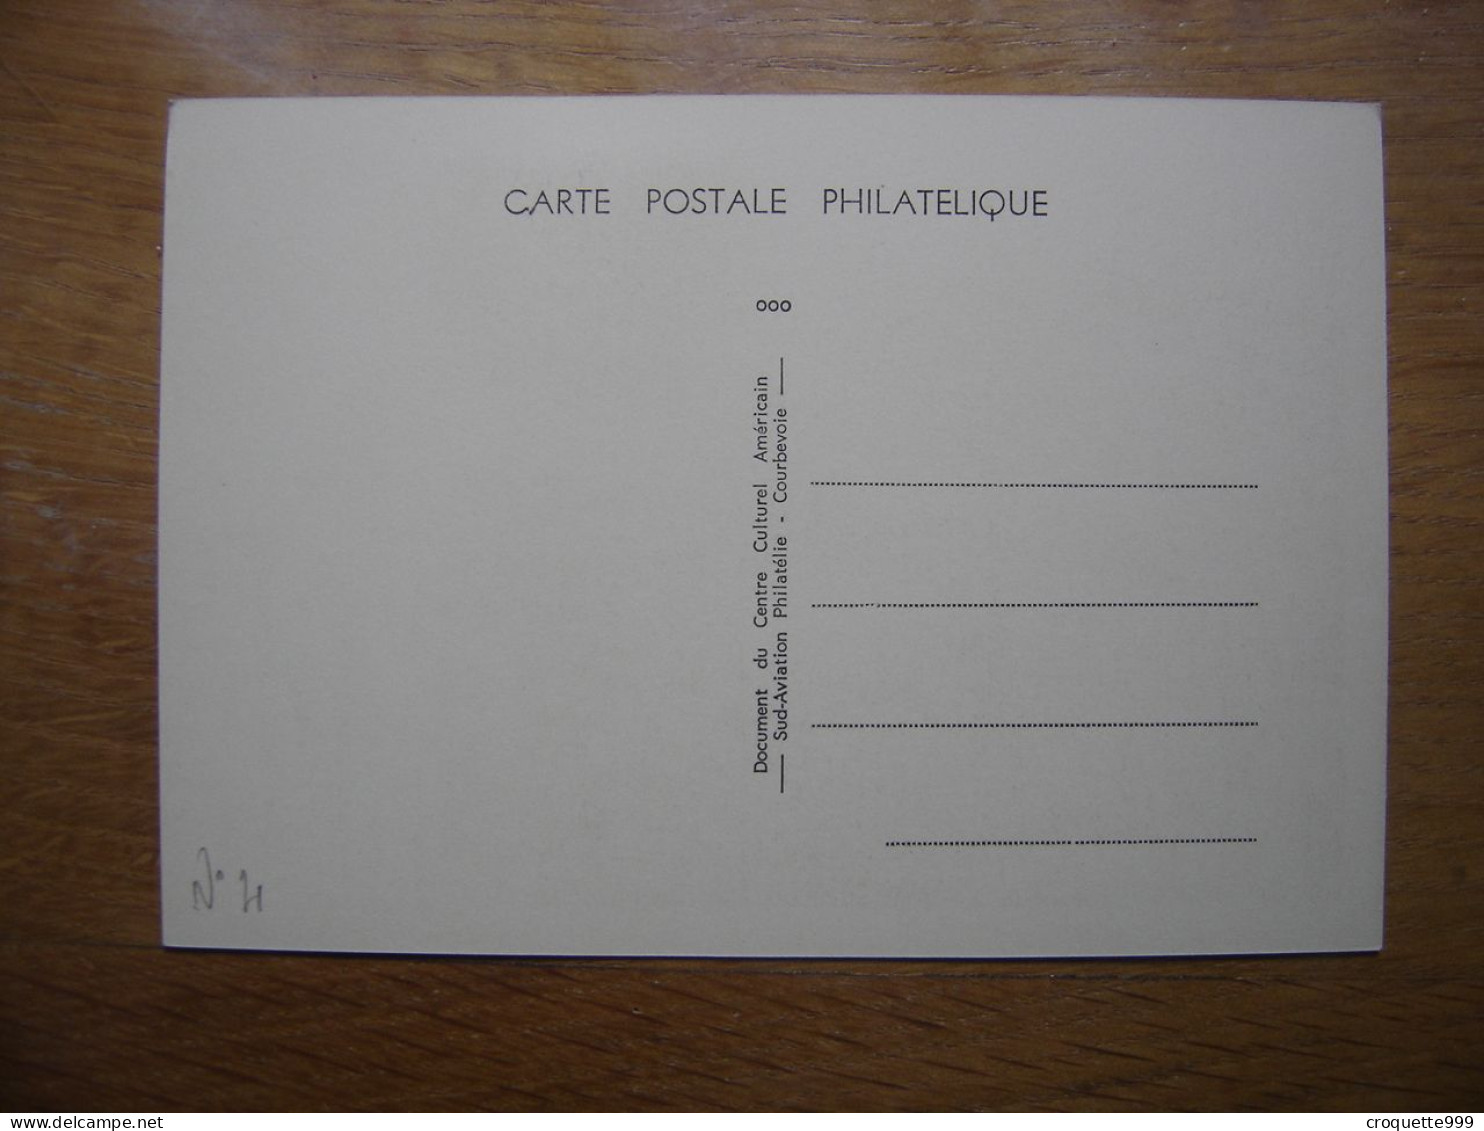 SCOTT CARPENTER Carte Maximum Cosmonaute ESPACE Salon De L'aéronautique Bourget - Collections